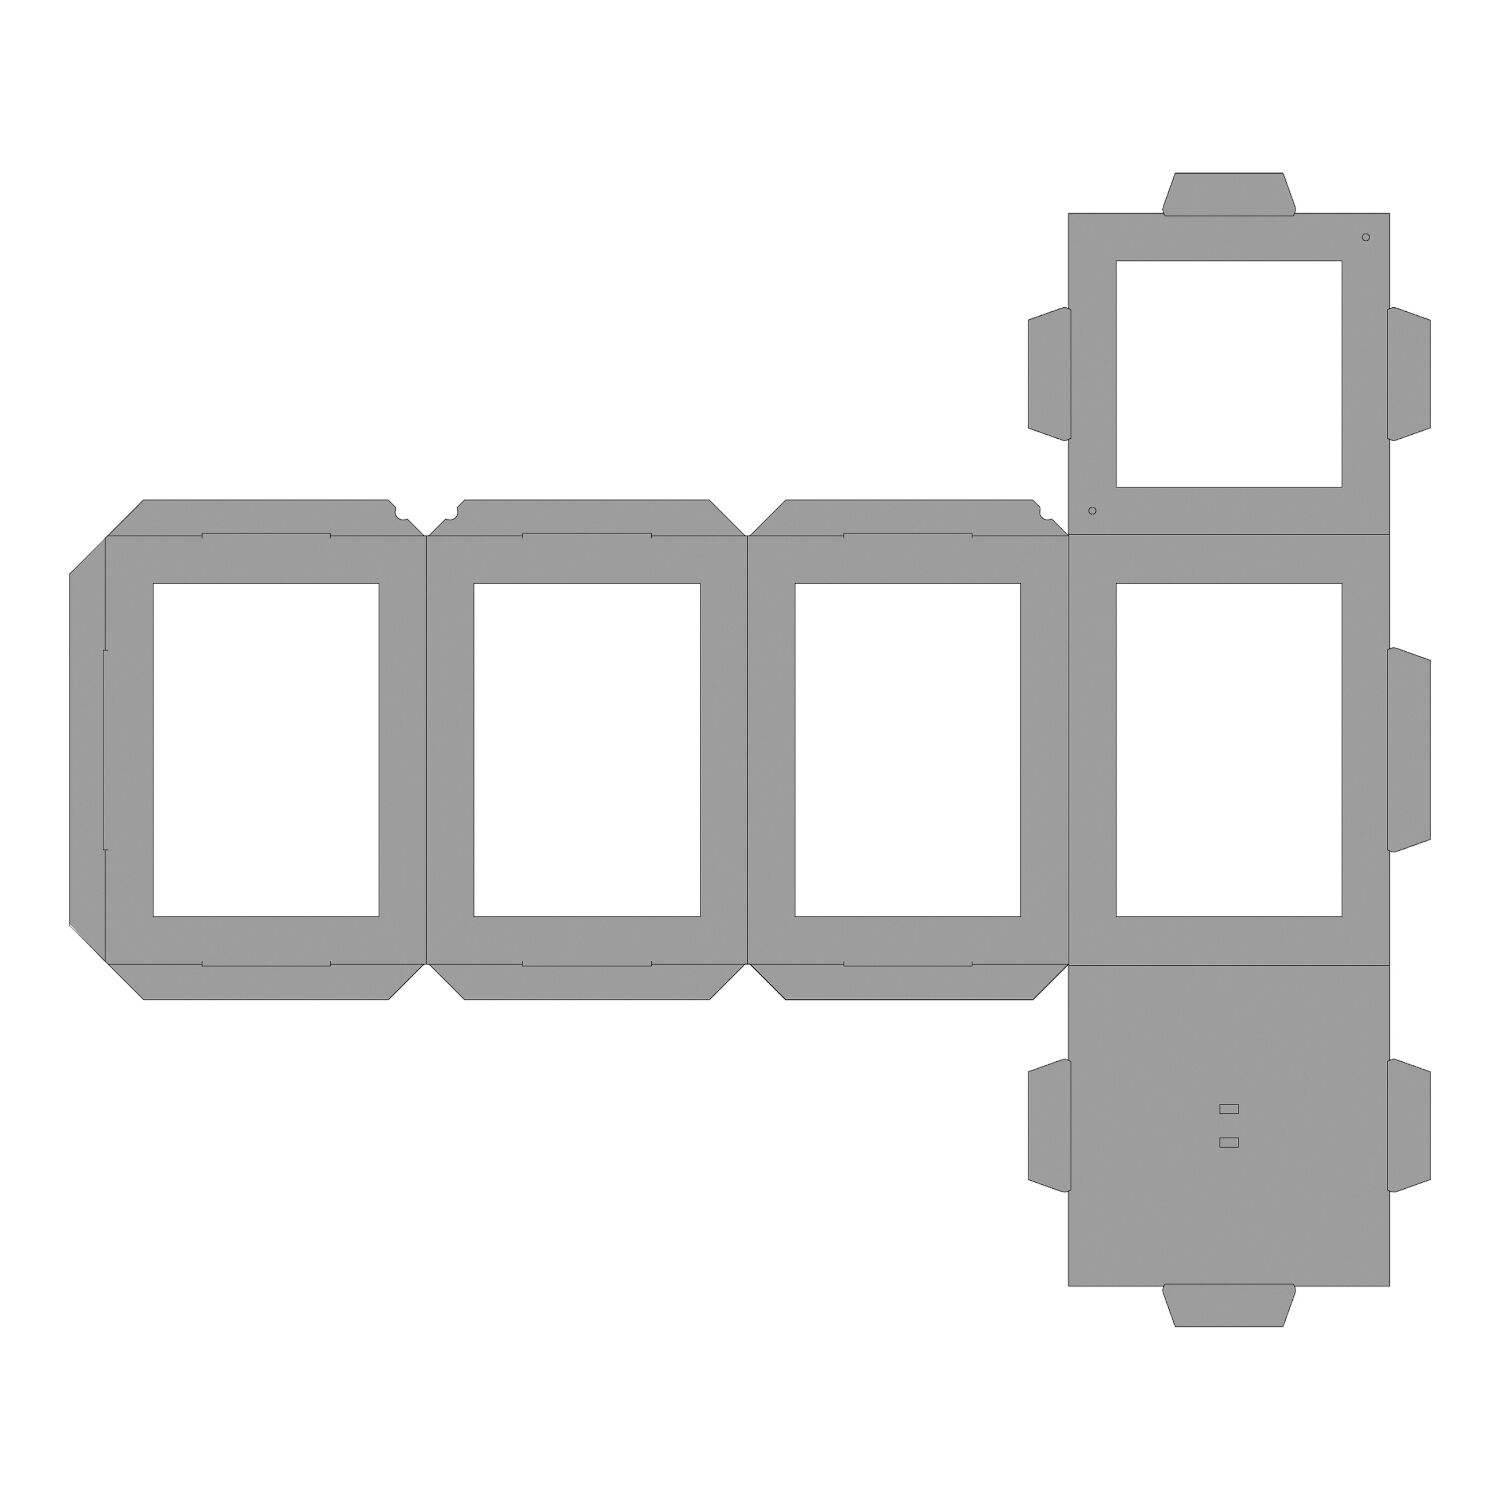 NEU Laternen Rohlinge zum Stecken, 400g/m², Eckig: 13,5x13,5x18cm, 5 Stück, Weiß Bild 3